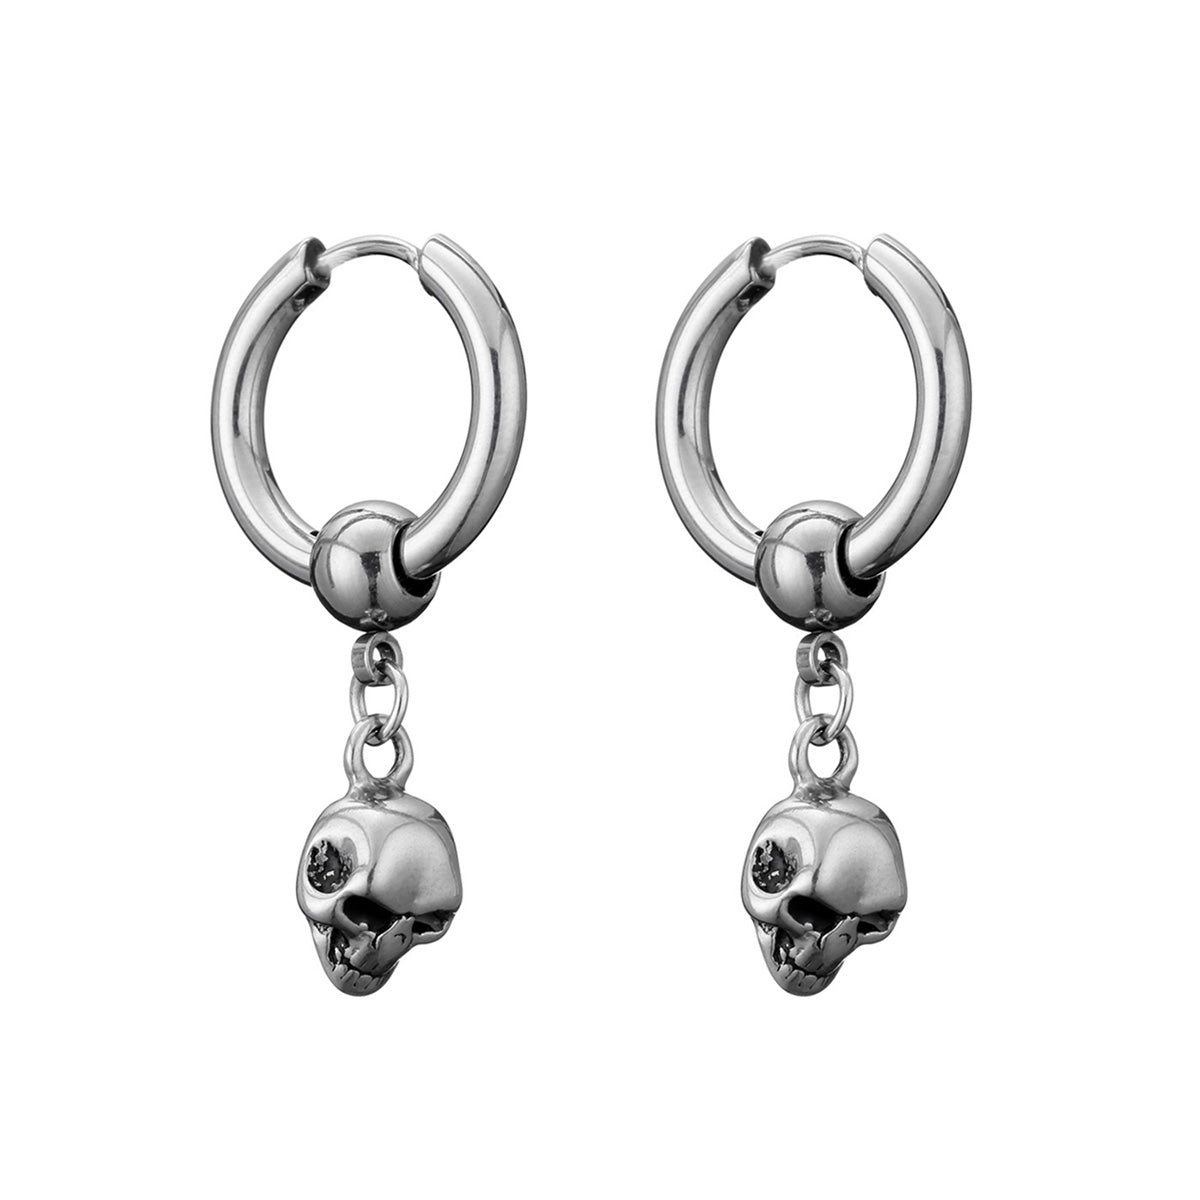 Dödskalle hänge örhängen ring örhängen (stål 316L)